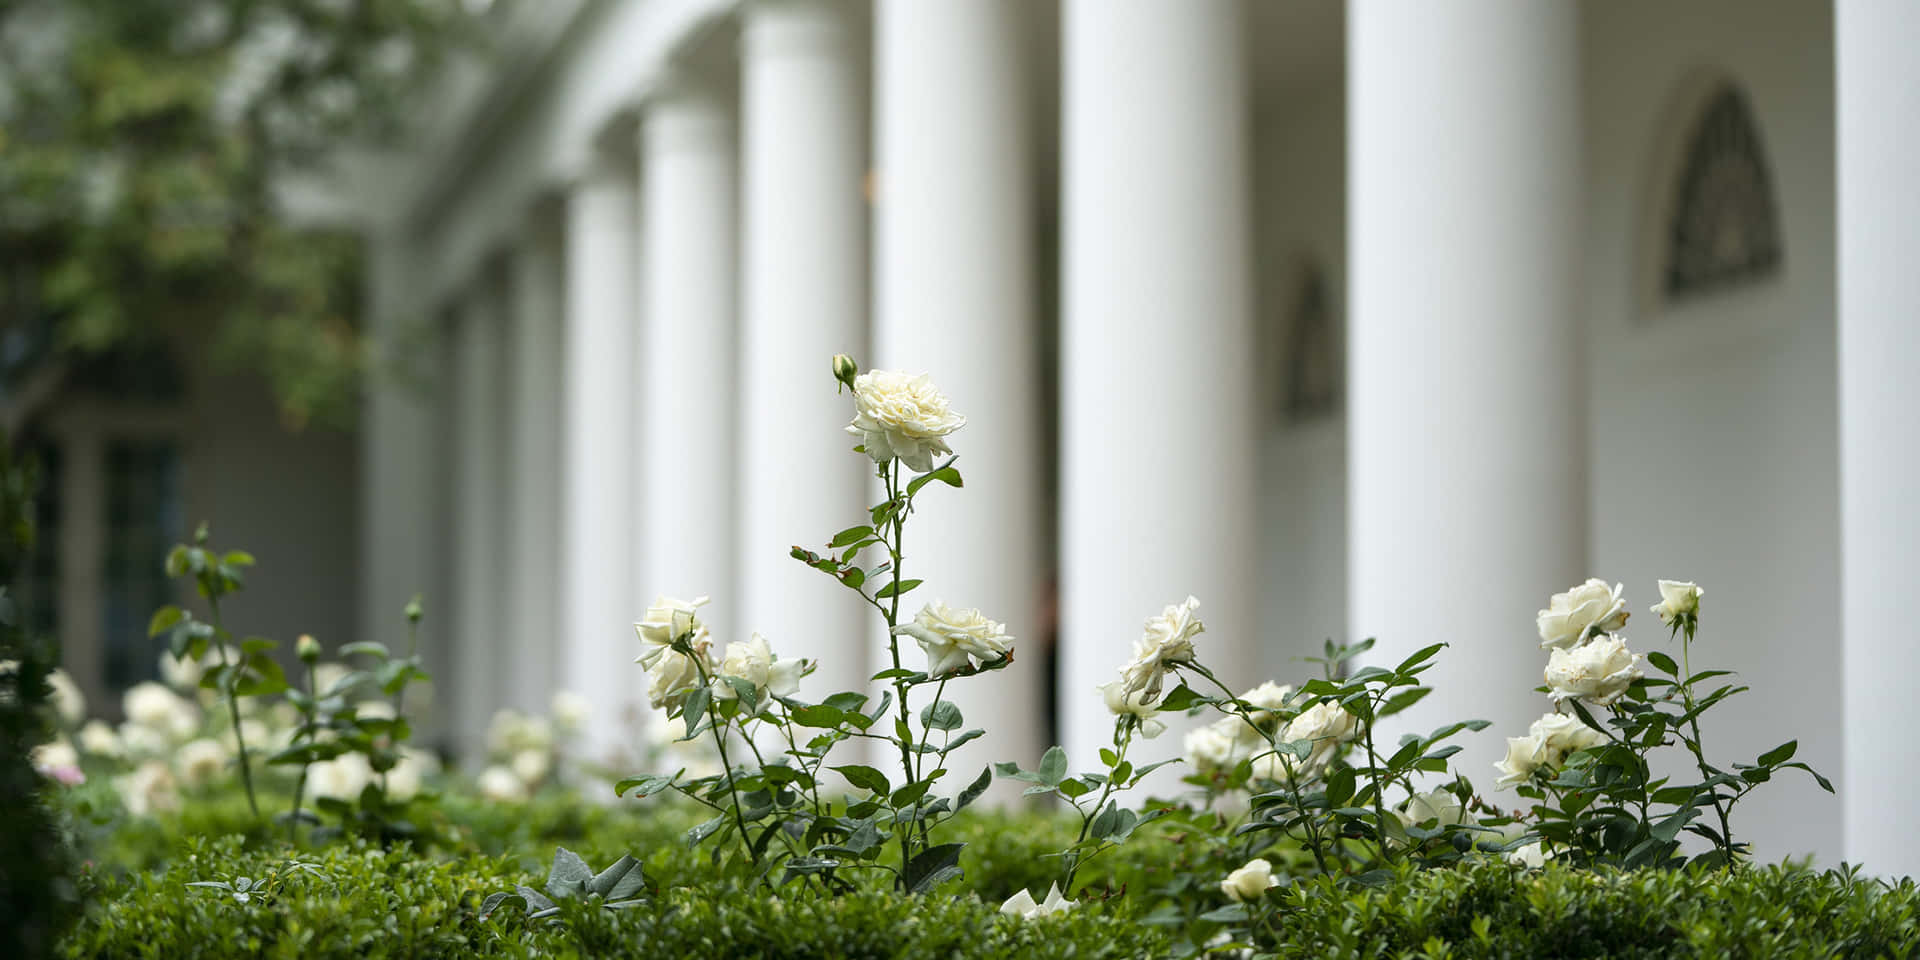 The White House Rose Garden in full bloom